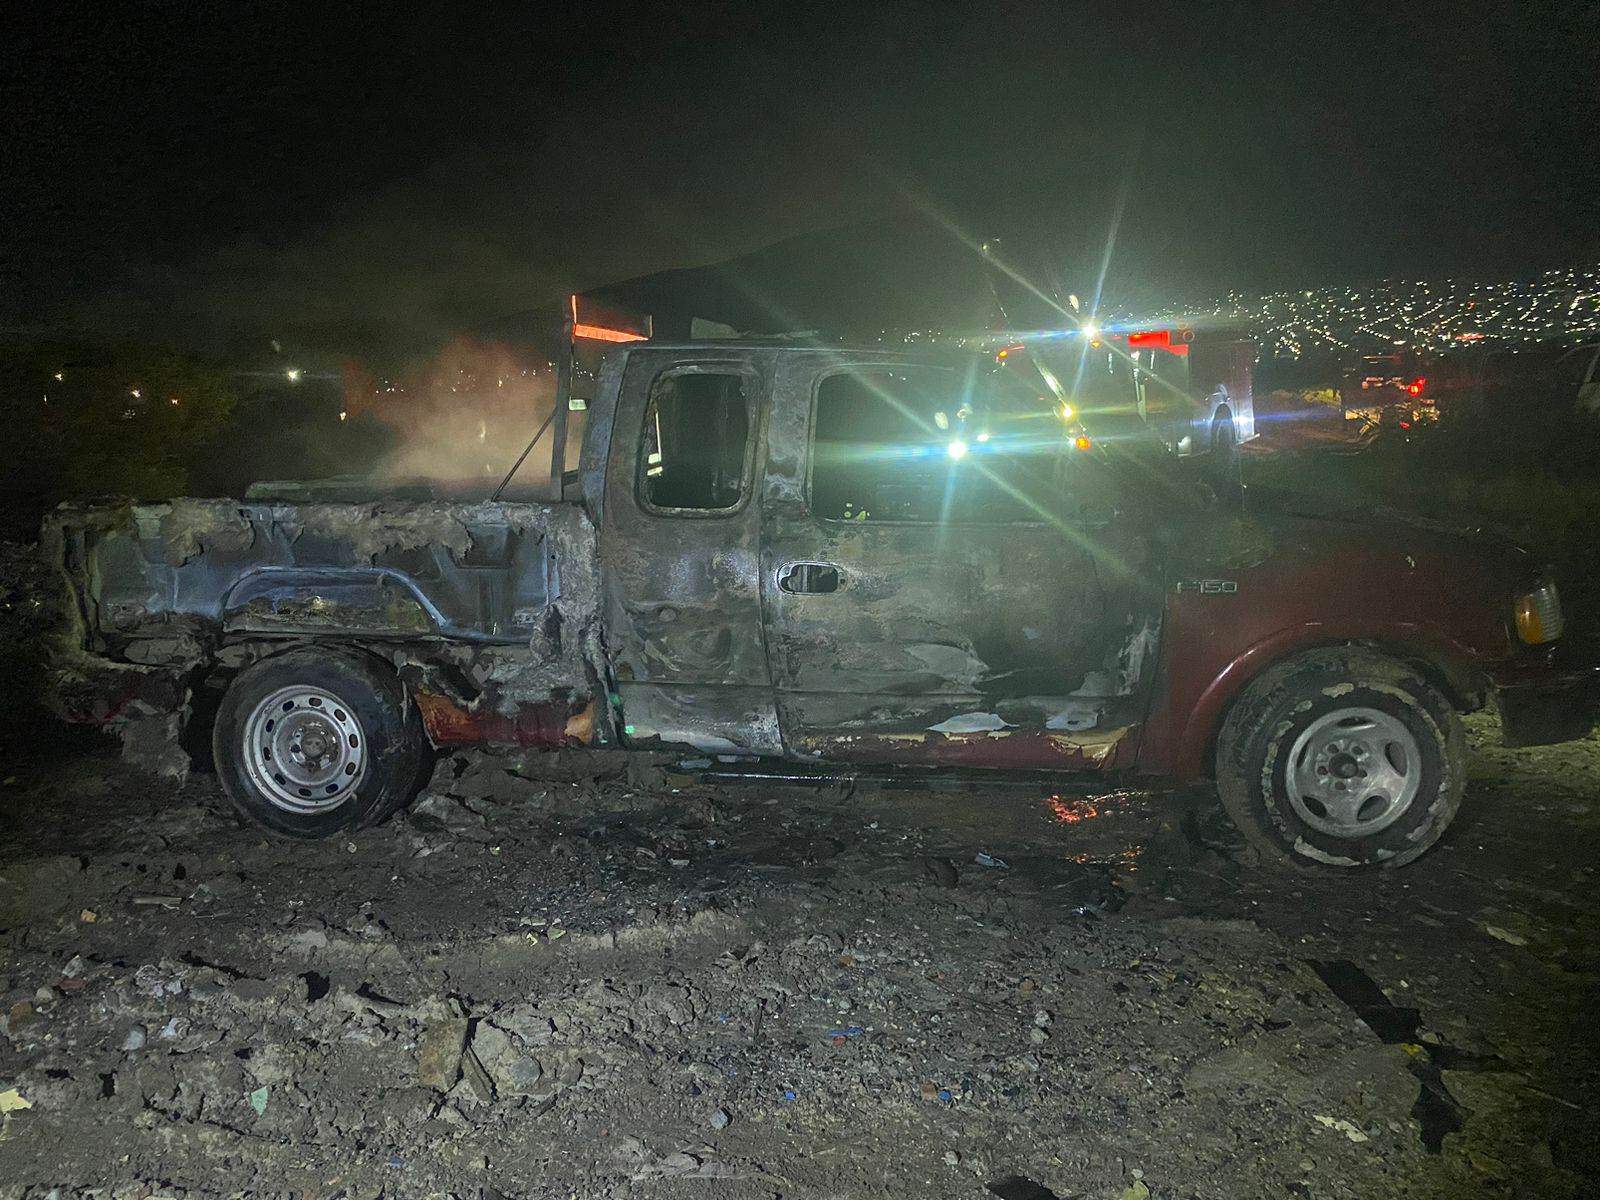 El reporte de una camioneta incendiándose con una menor en el interior y pidiendo auxilio, movilizó a las autoridades la noche del miércoles, en la Colonia San Bernabé, al norte de Monterrey, sin que se reportaran lesionados.